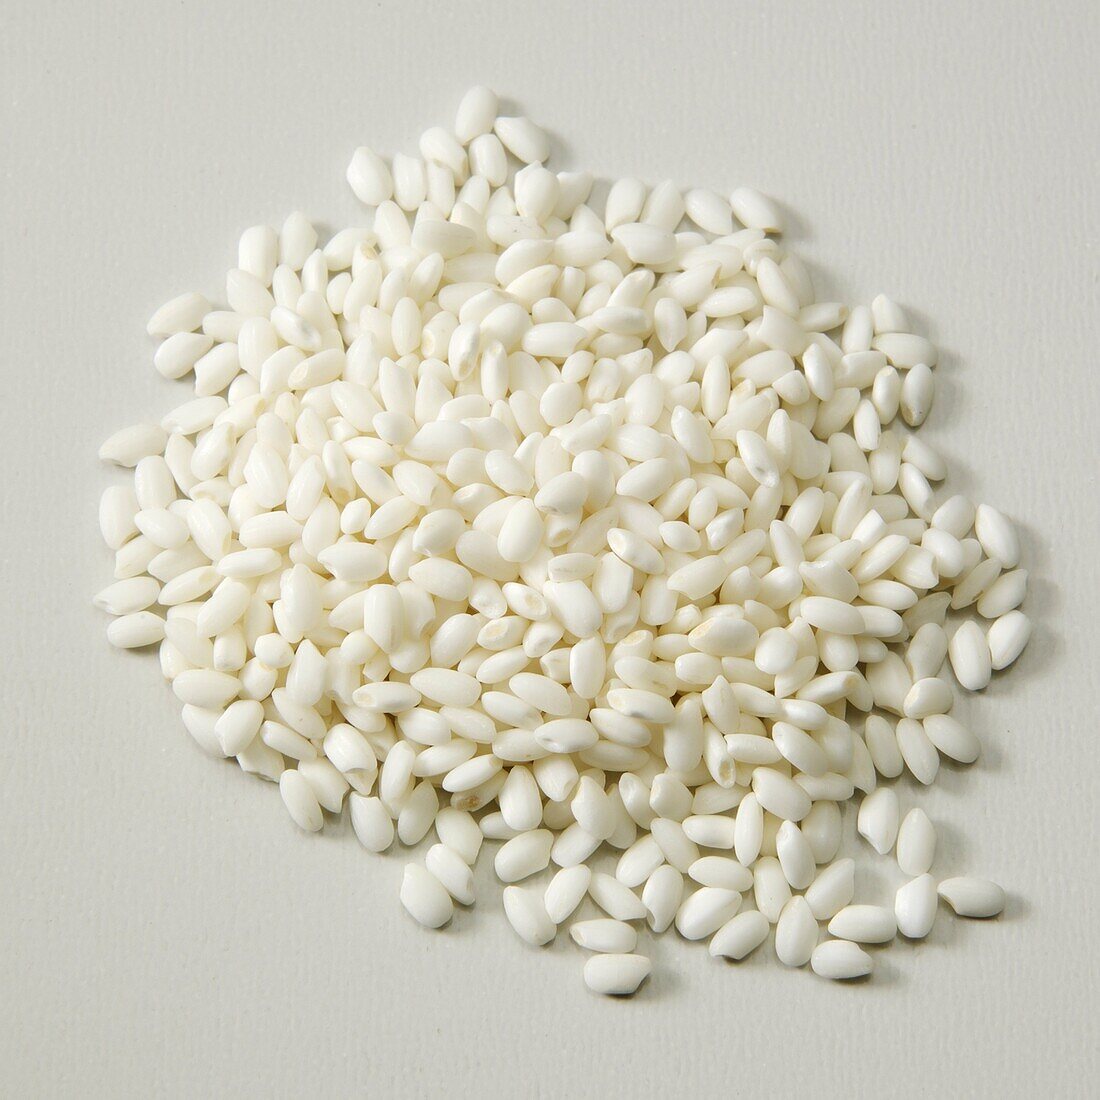 White glutinous rice